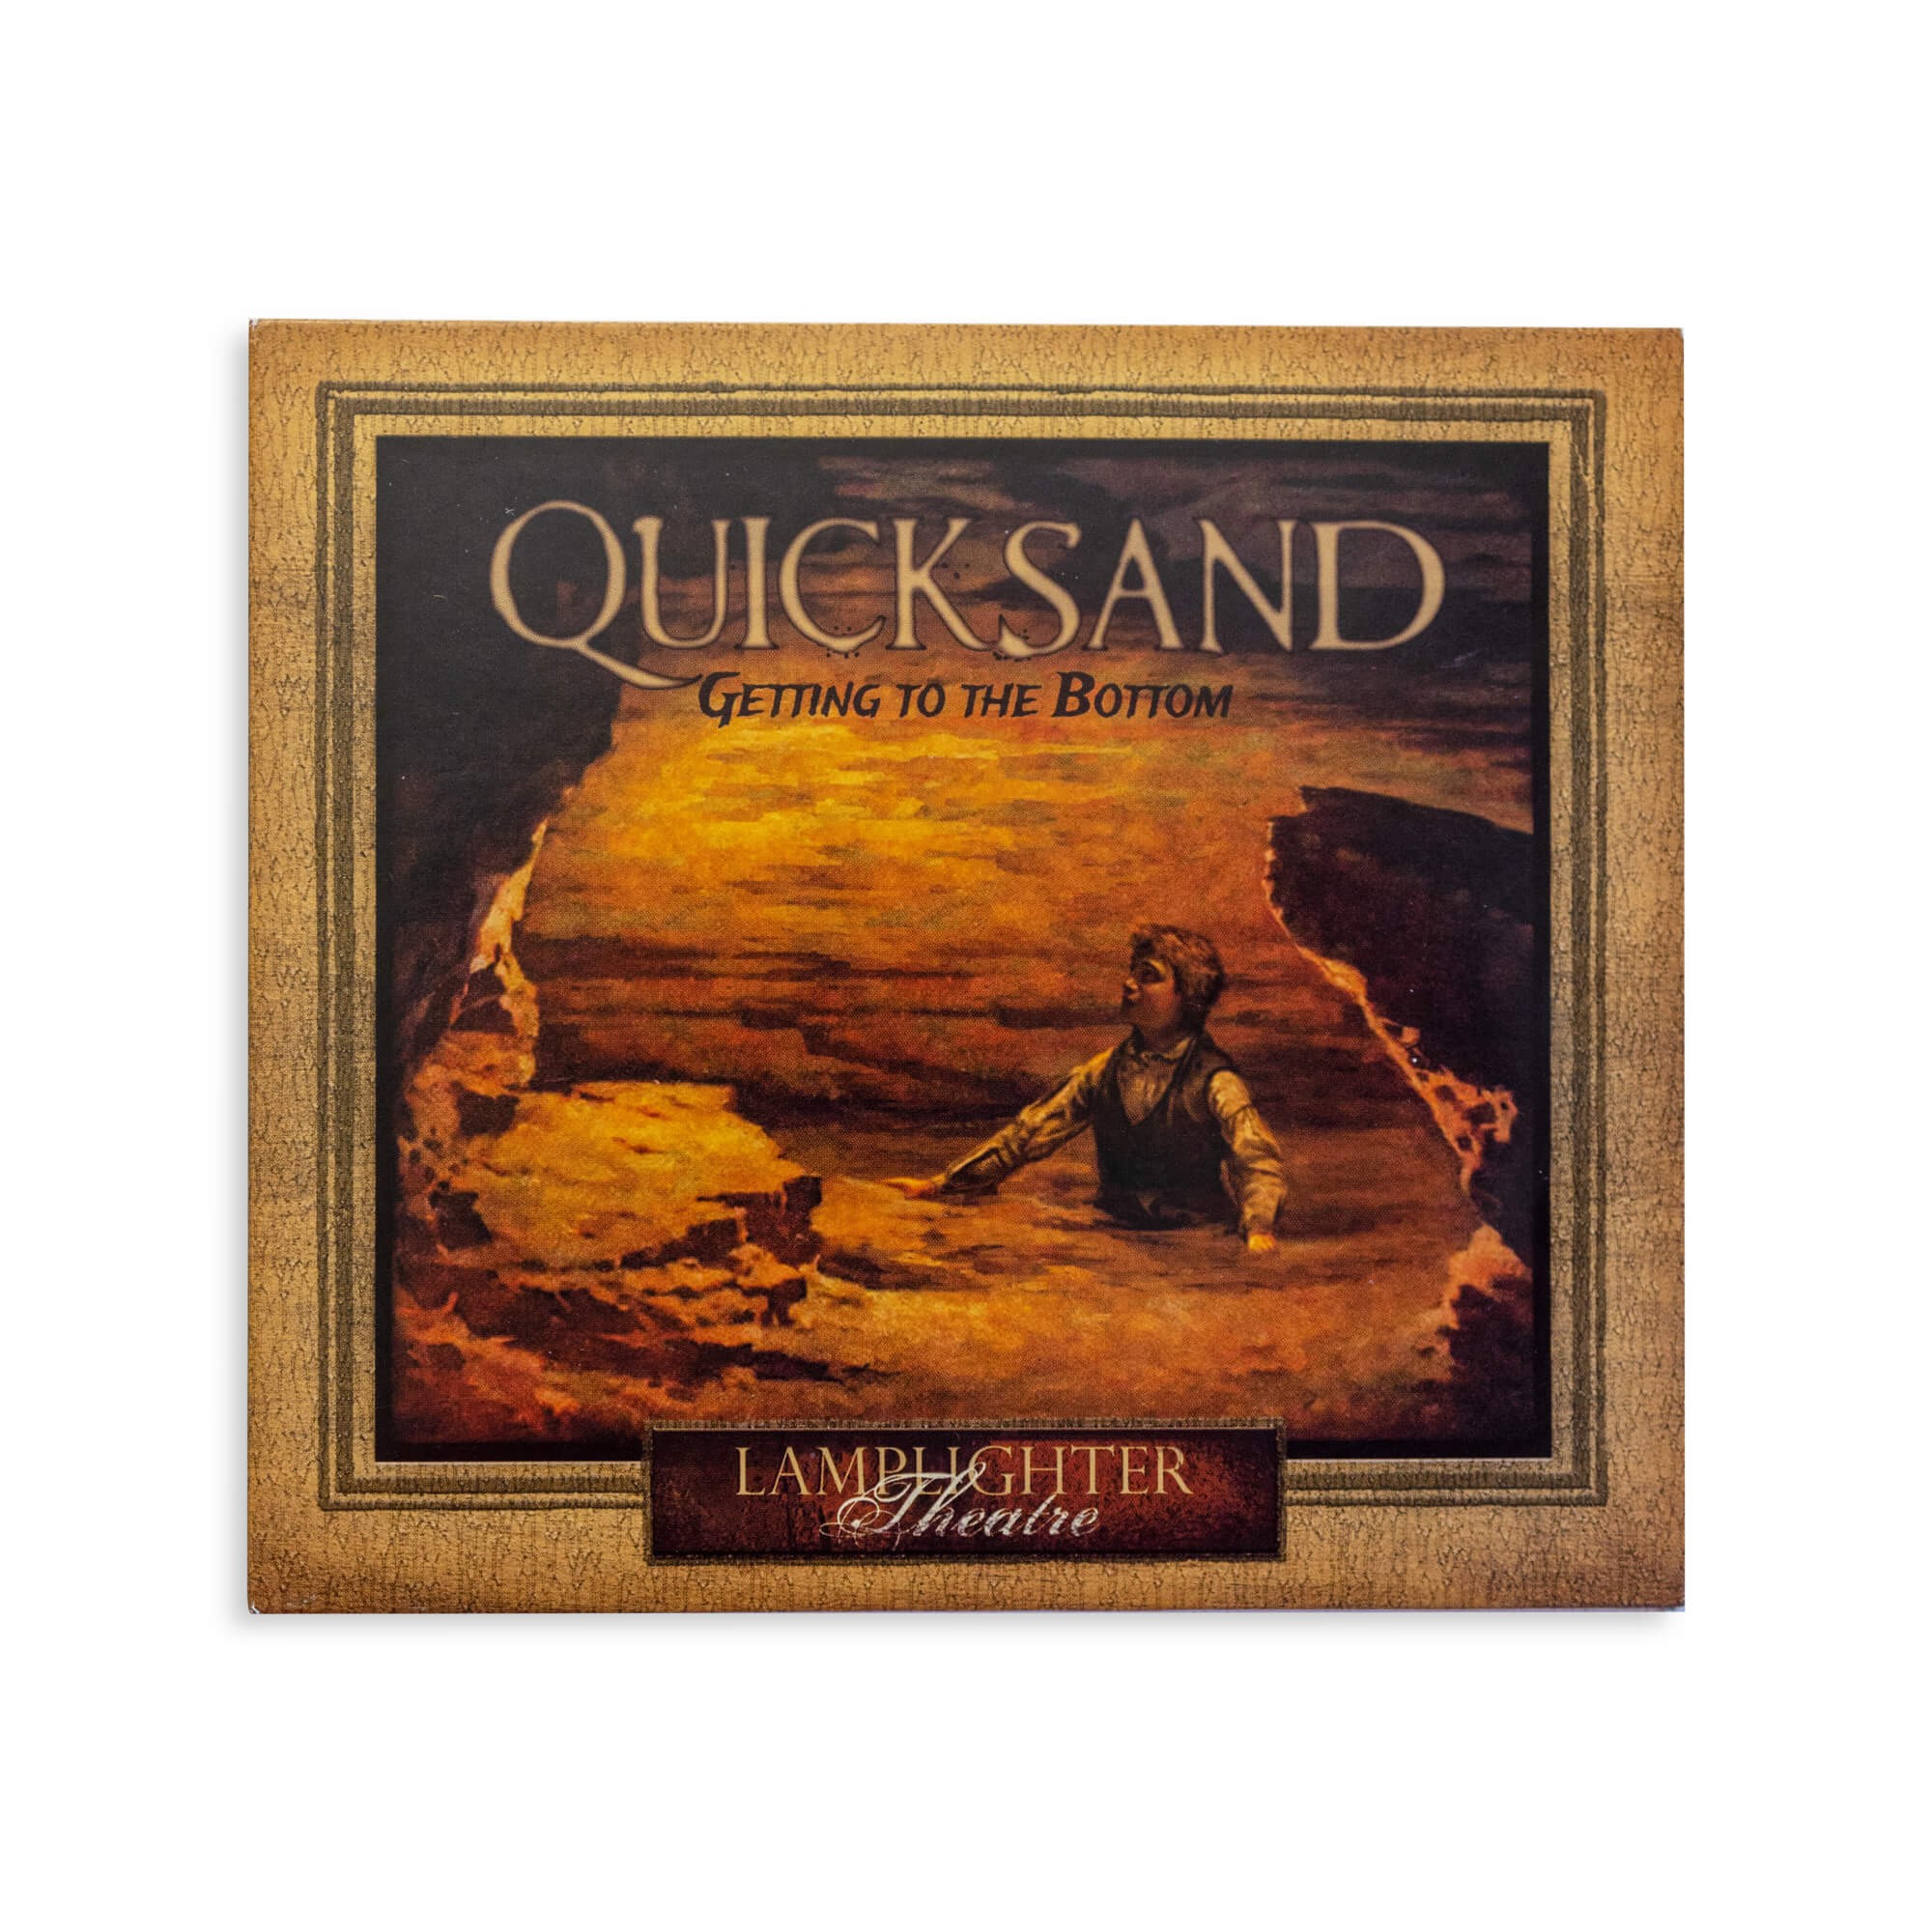 Quicksand Audio Drama CD (Ages 12+)